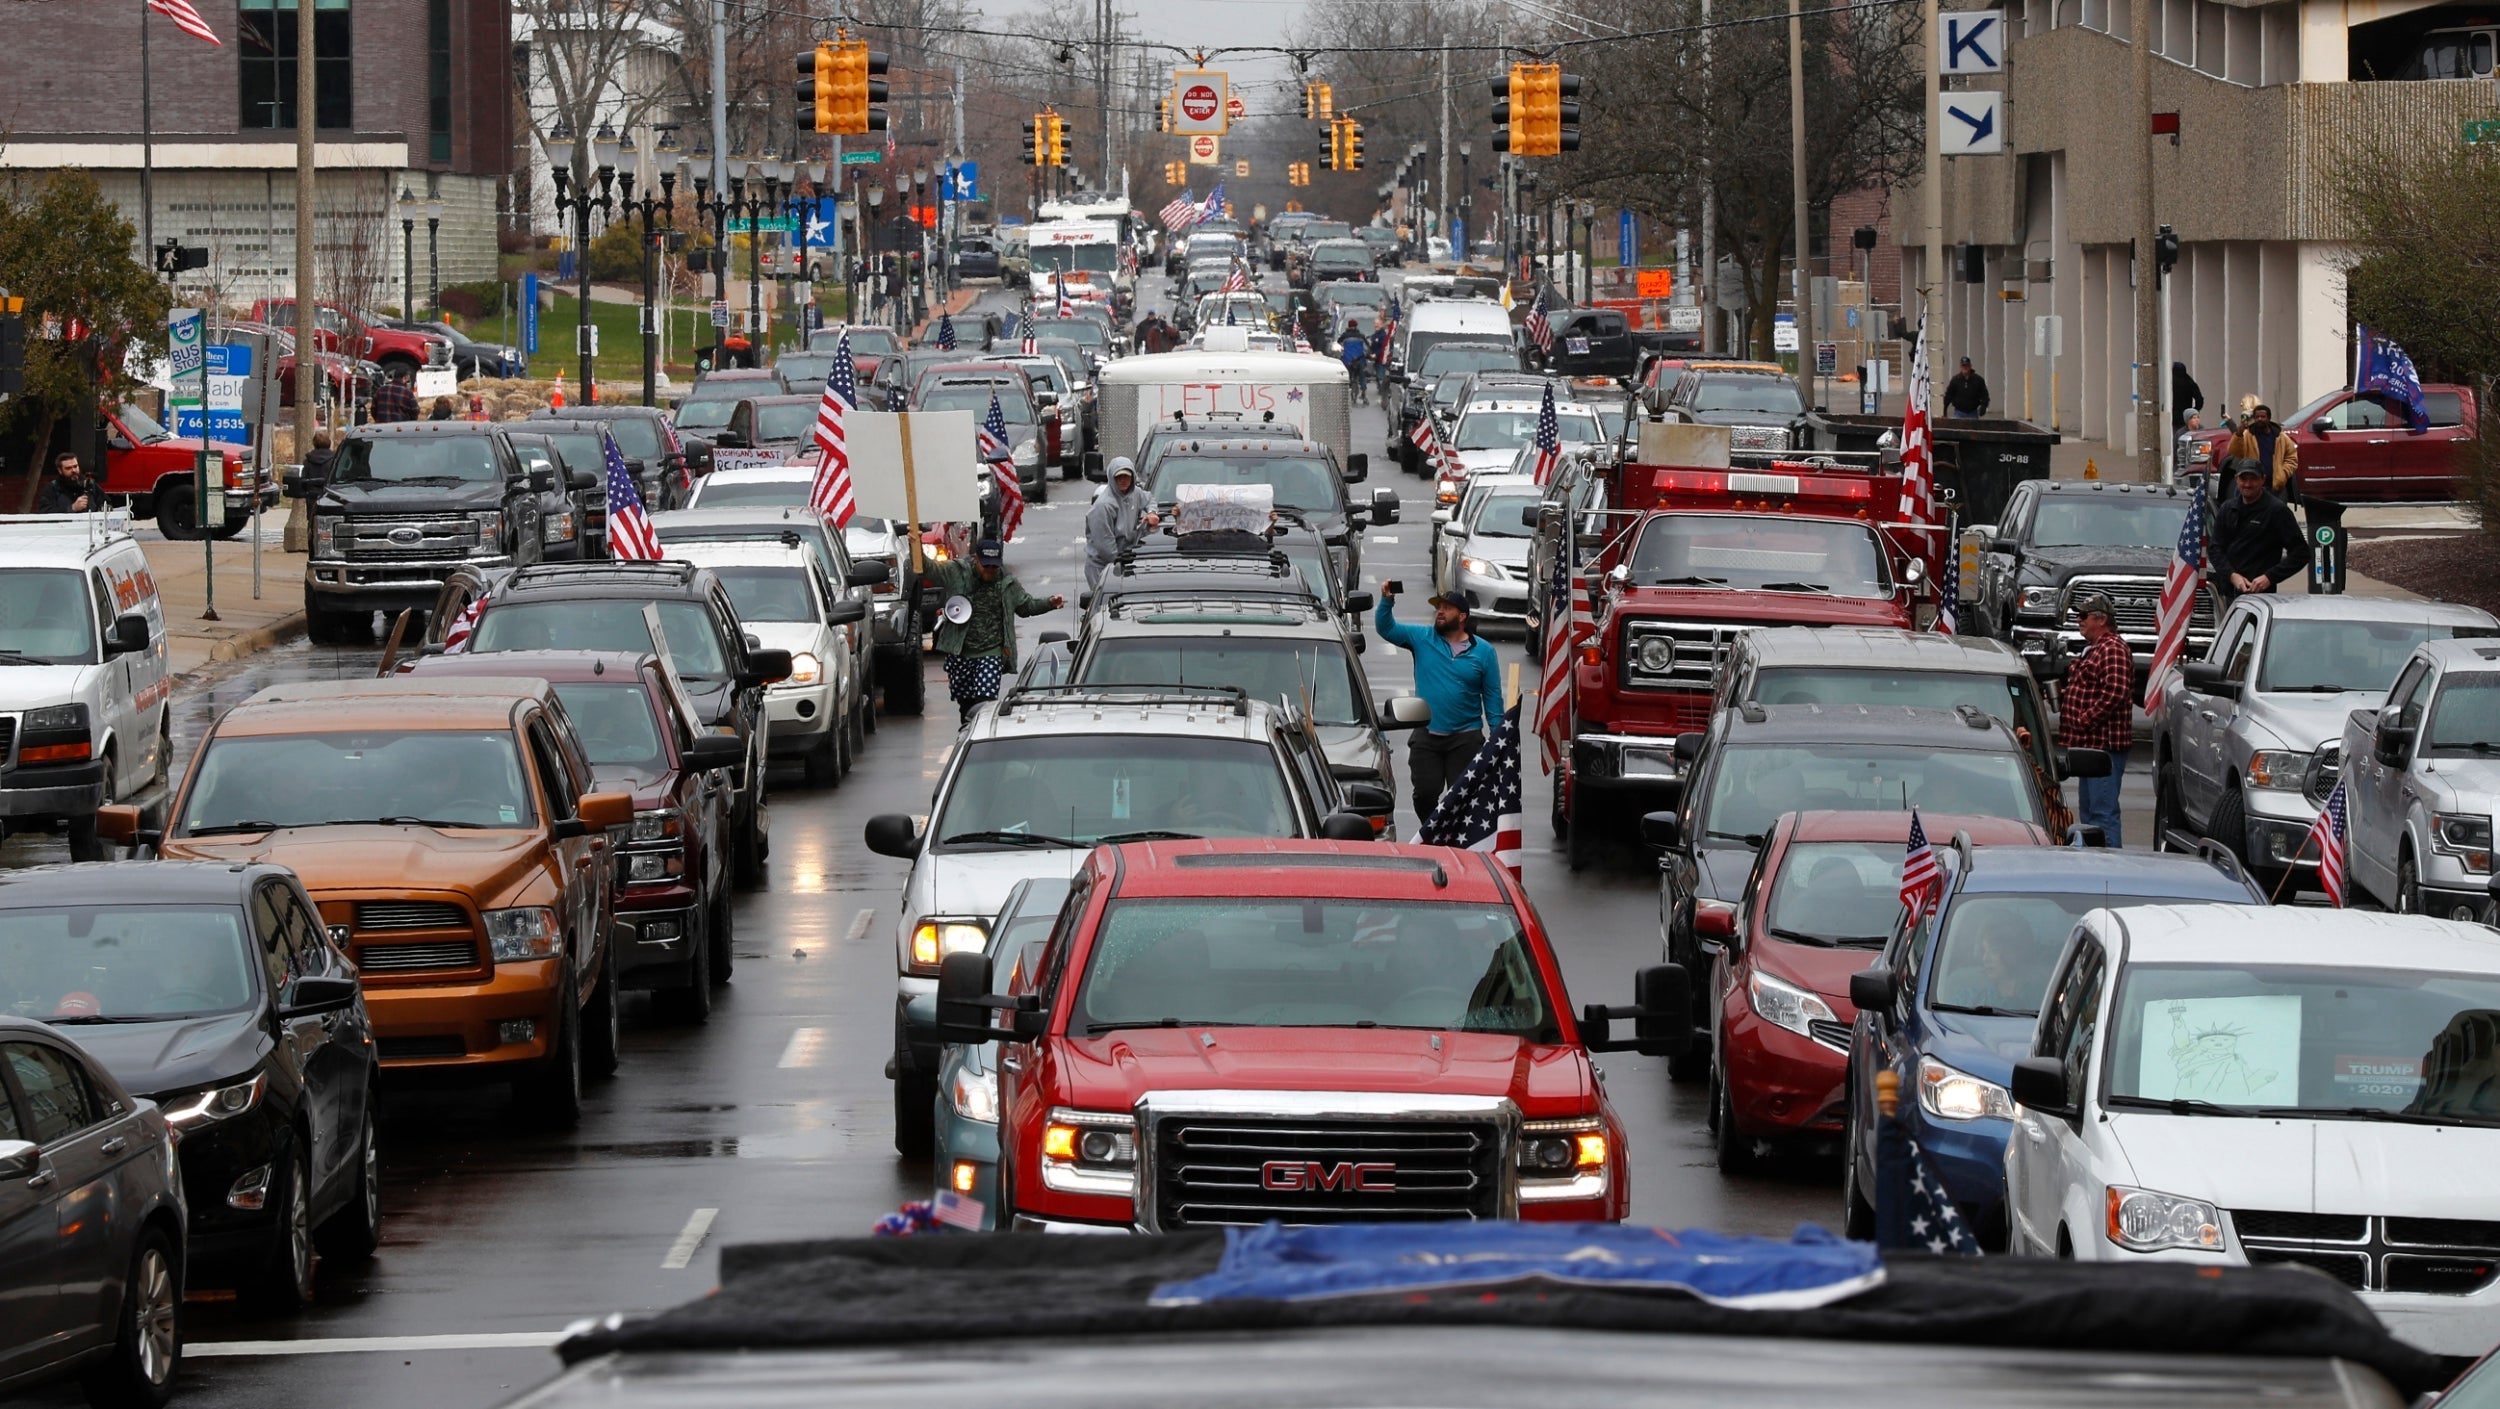 Protestan en Michigan desde sus autos contra cuarentena por Covid-19